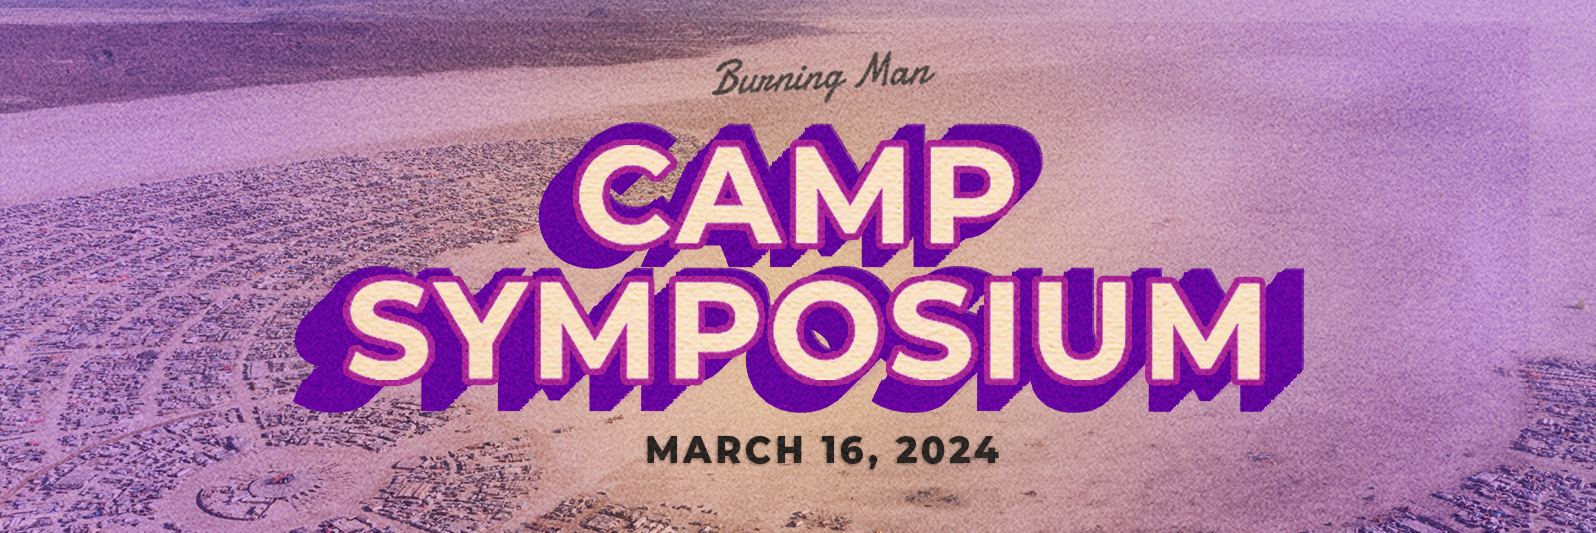 2024 Camp Symposium Burning Man